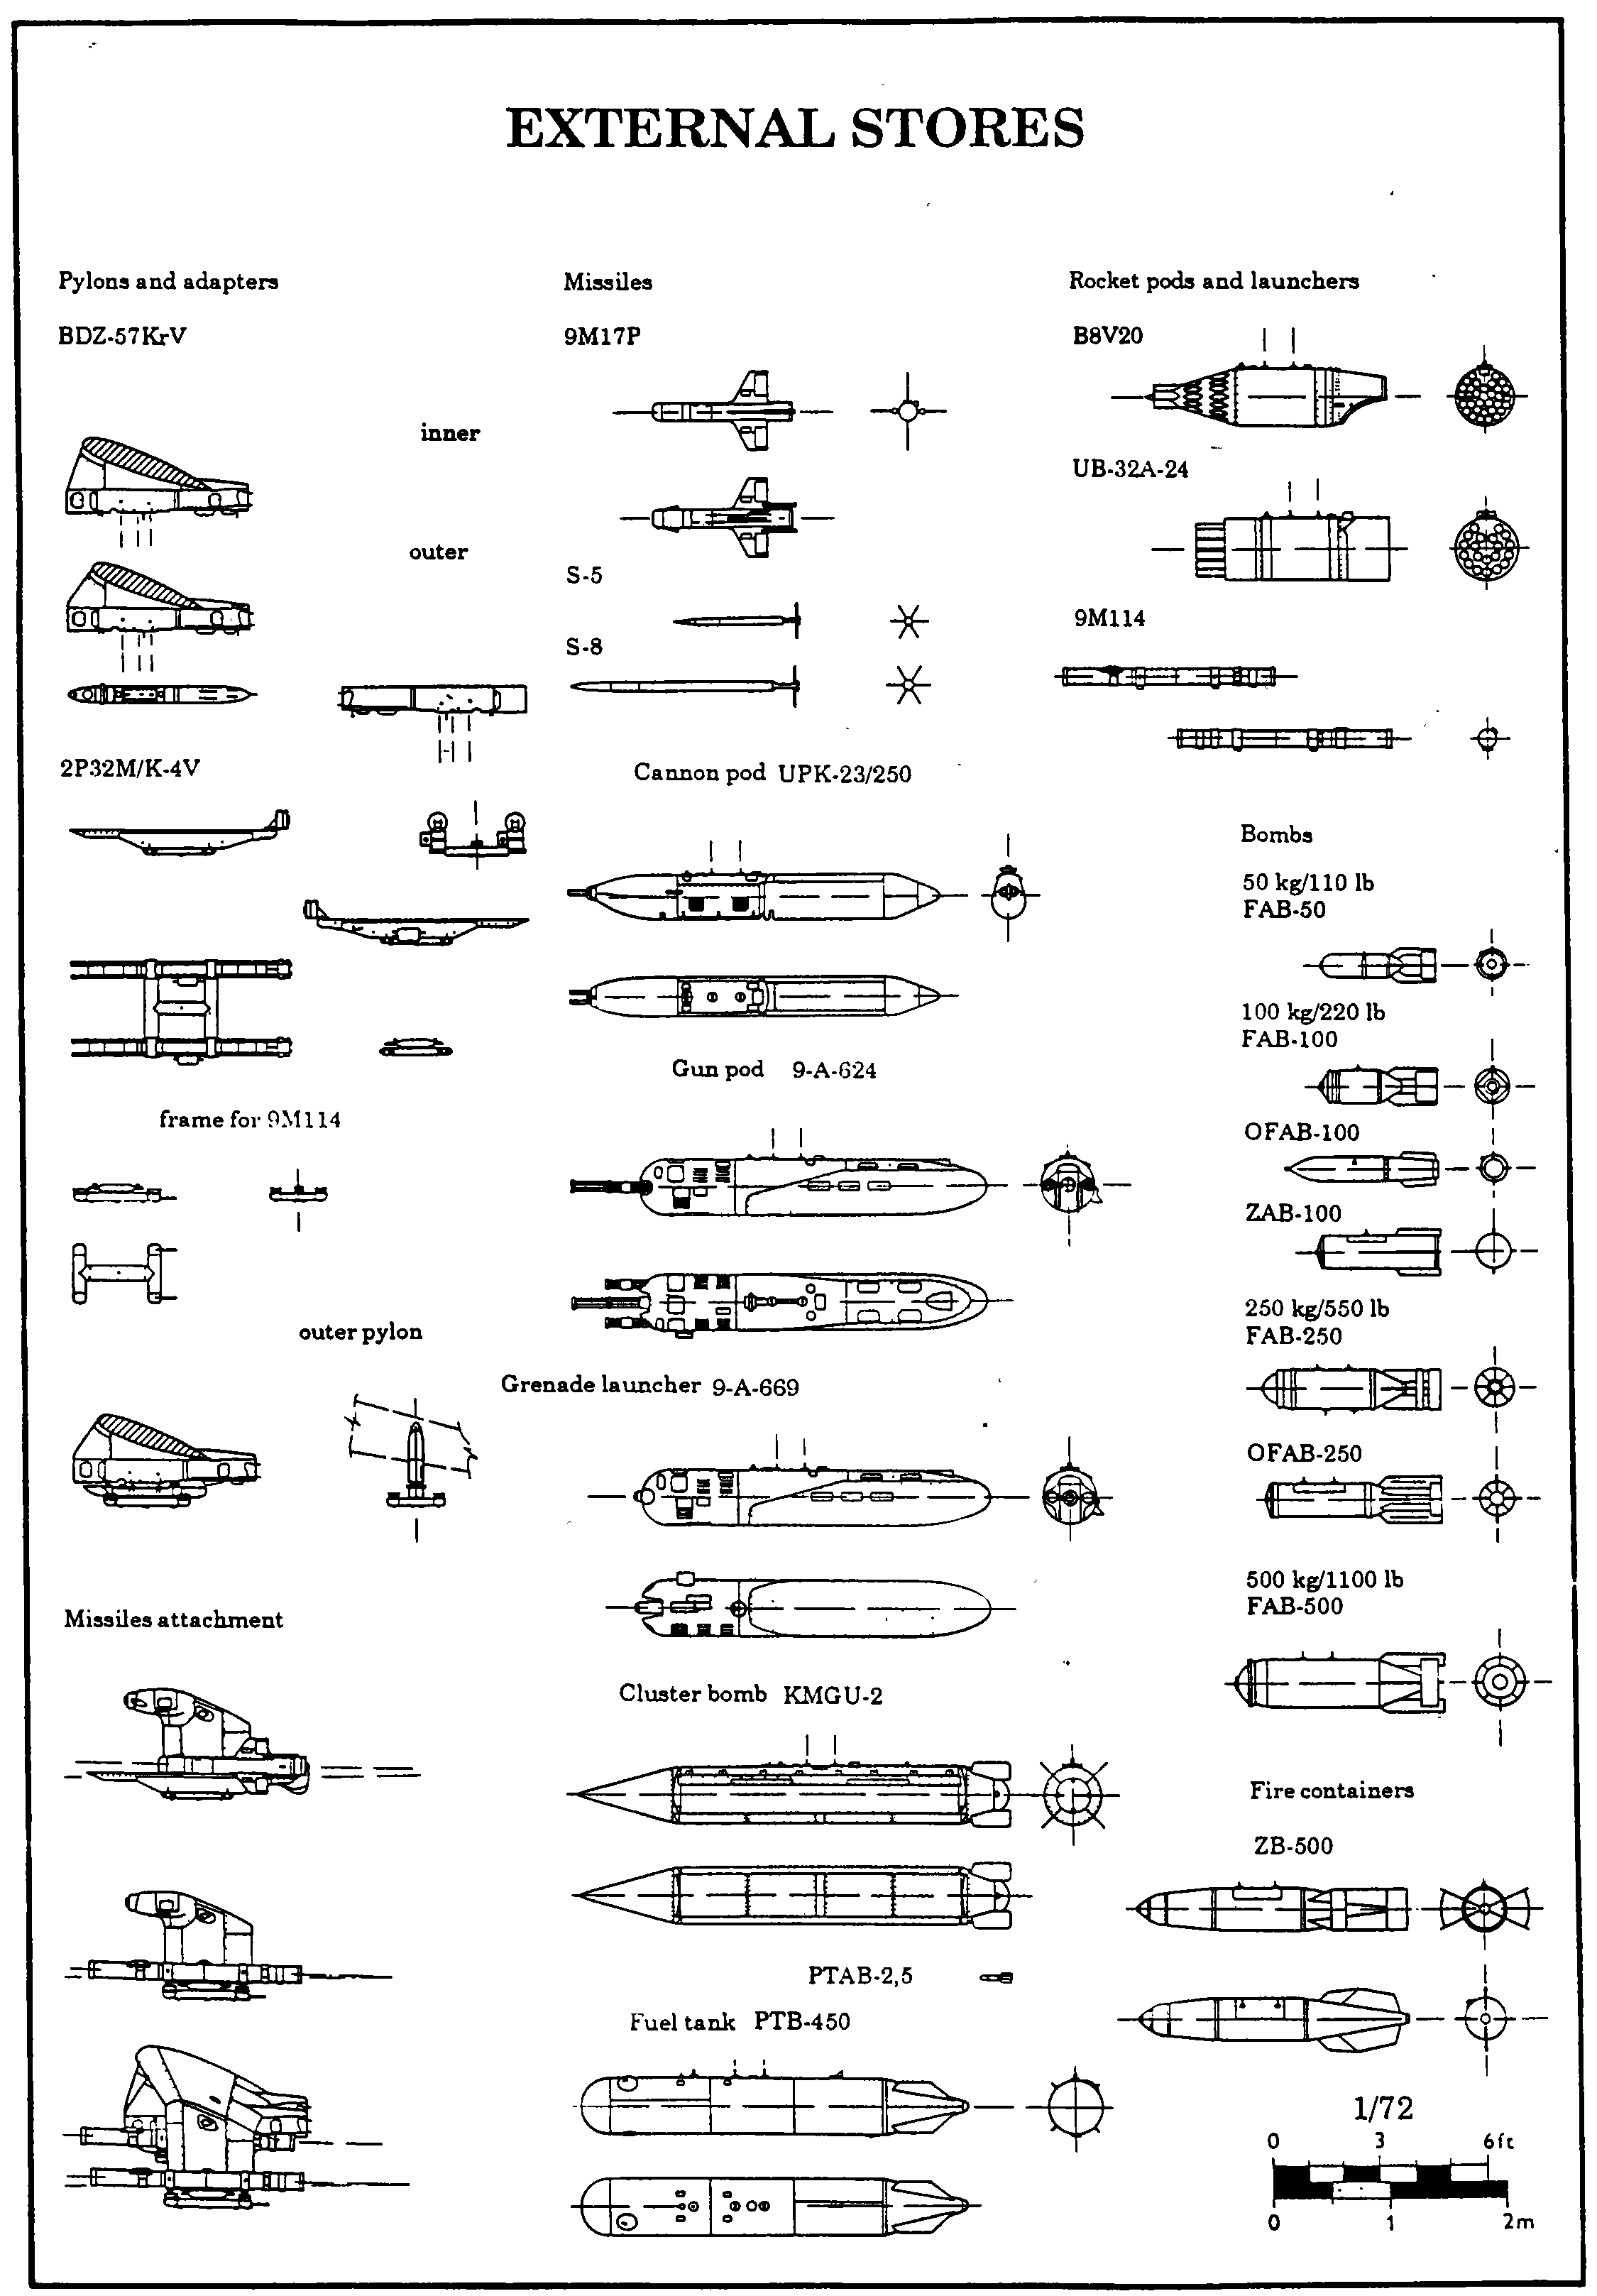 Mi-24 blueprint